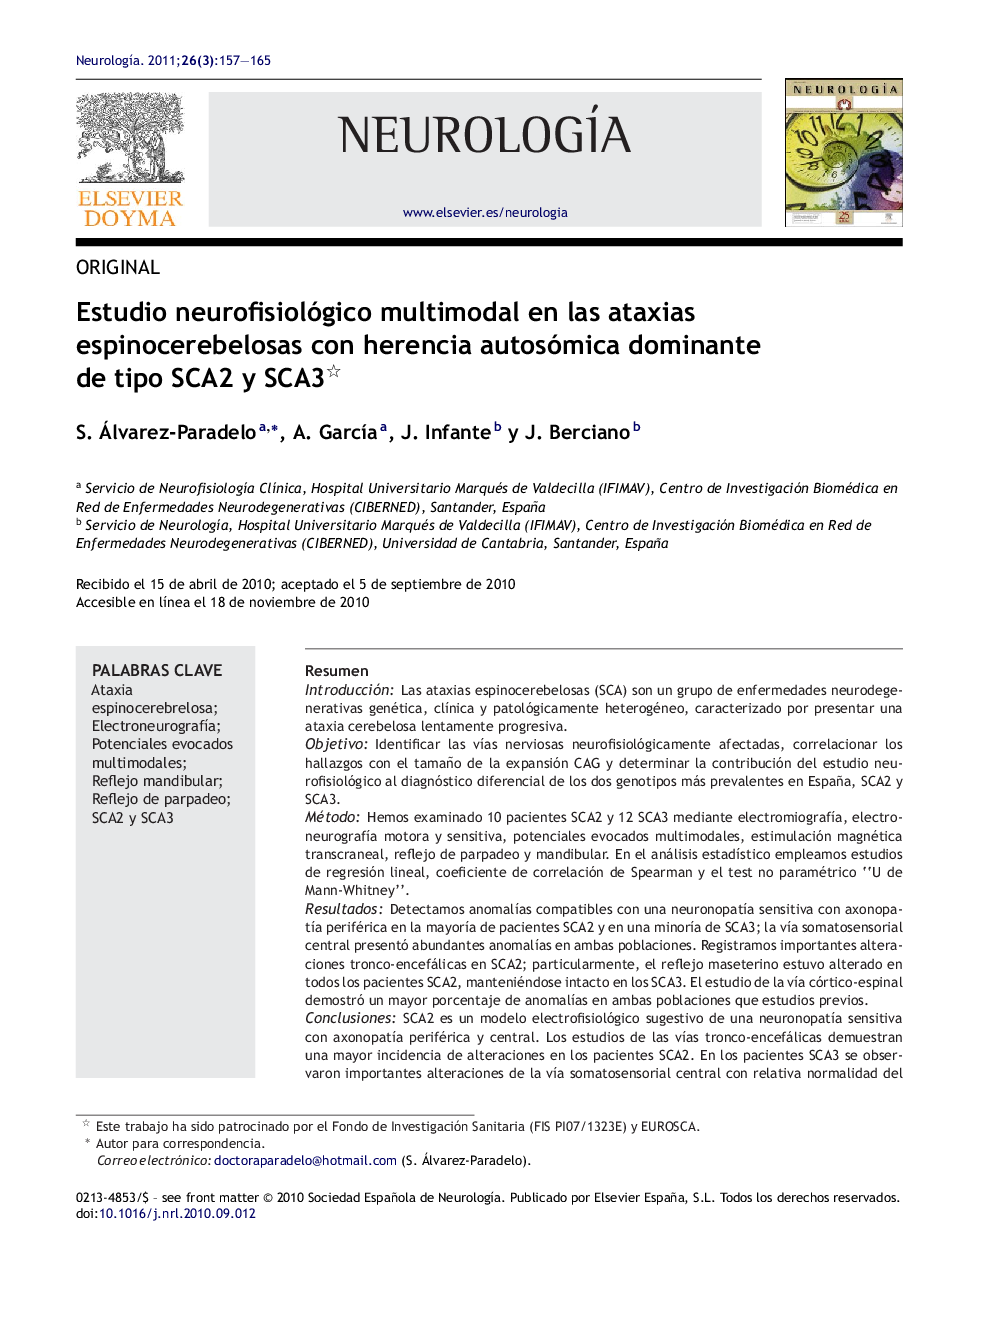 Estudio neurofisiológico multimodal en las ataxias espinocerebelosas con herencia autosómica dominante de tipo SCA2 y SCA3